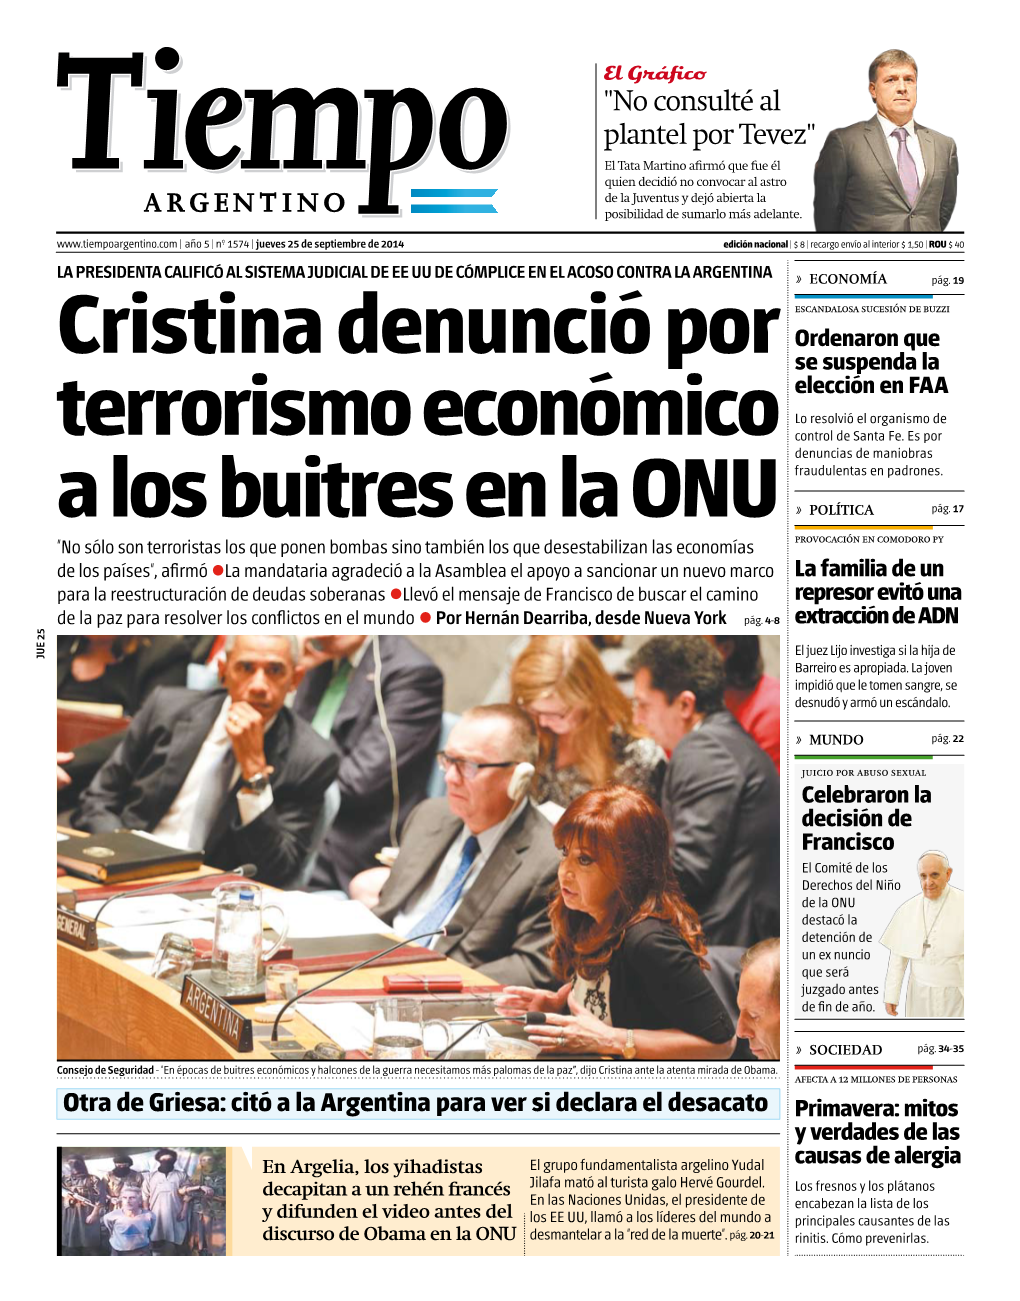 Cristina Denunció Por Terrorismo Económico a Los Buitres En La